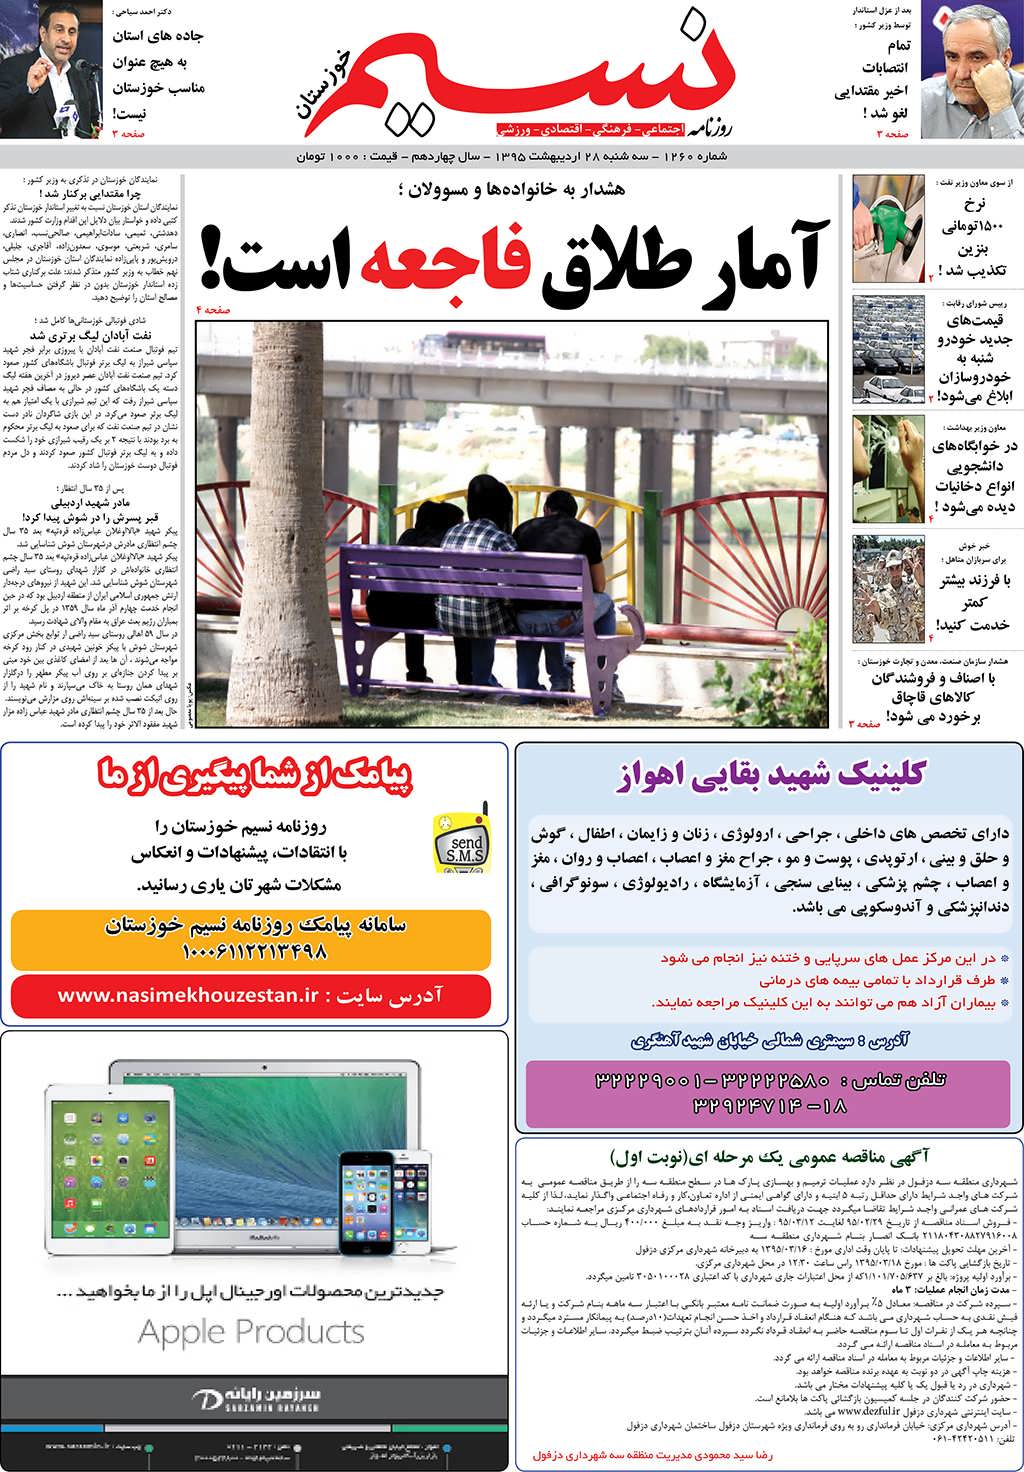 صفحه اصلی روزنامه نسیم شماره 1260